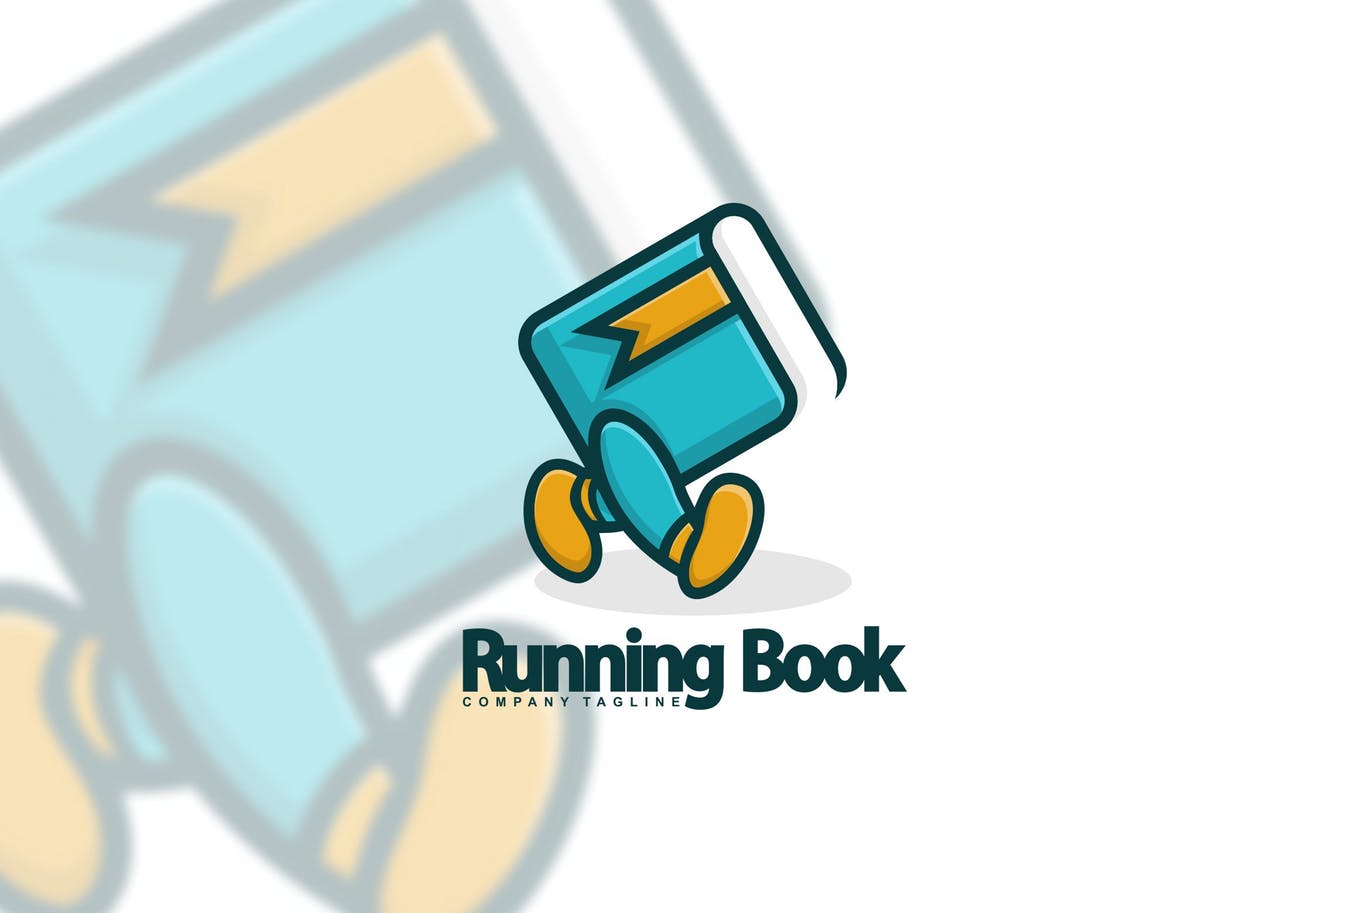 图书出版图书阅读主题“会行走”的书Logo设计素材库精选模板 Running Book插图